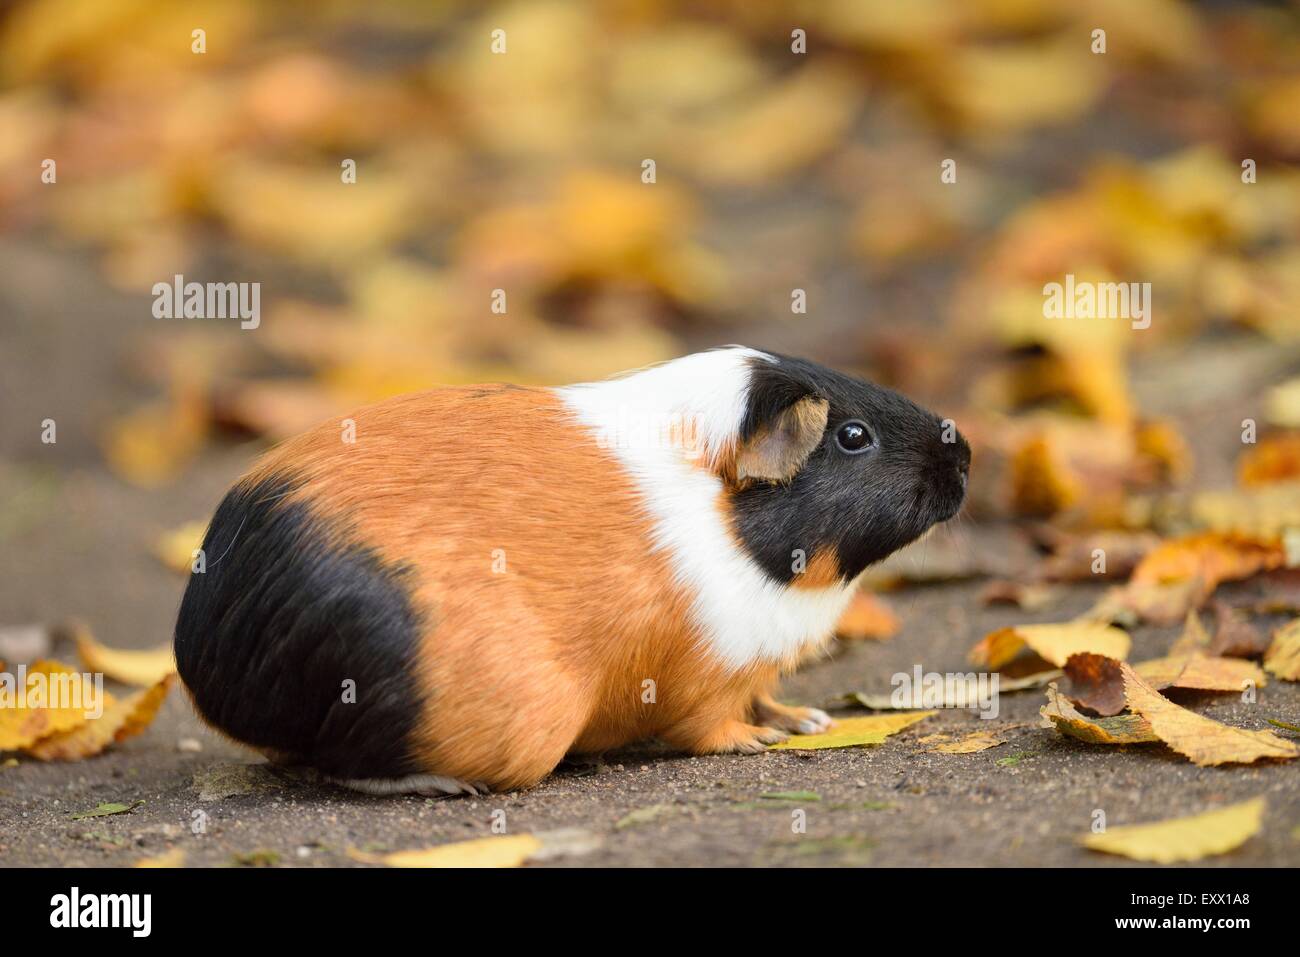 Guinea pig, Cavia porcellus, Bavaria, Germany, Europe Stock Photo